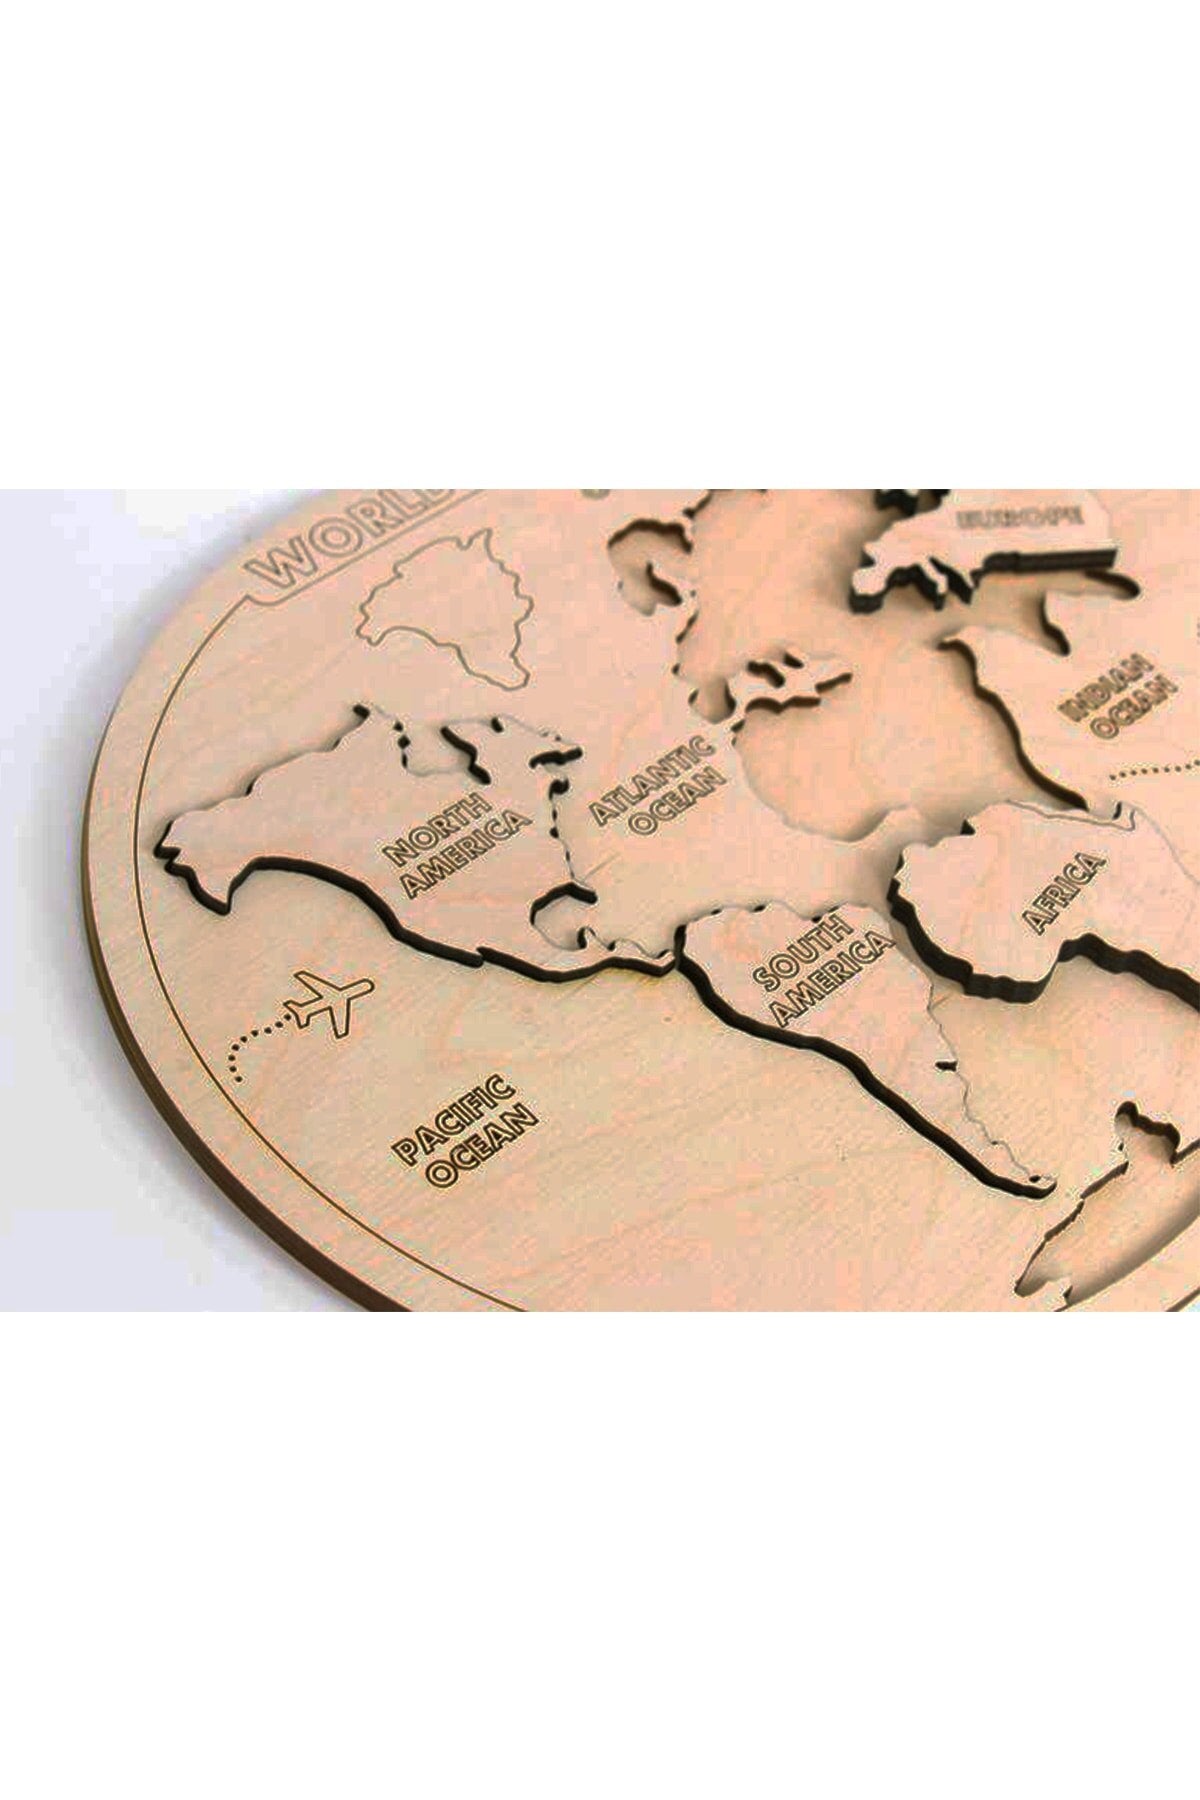 Montessori wooden world Map puzzle